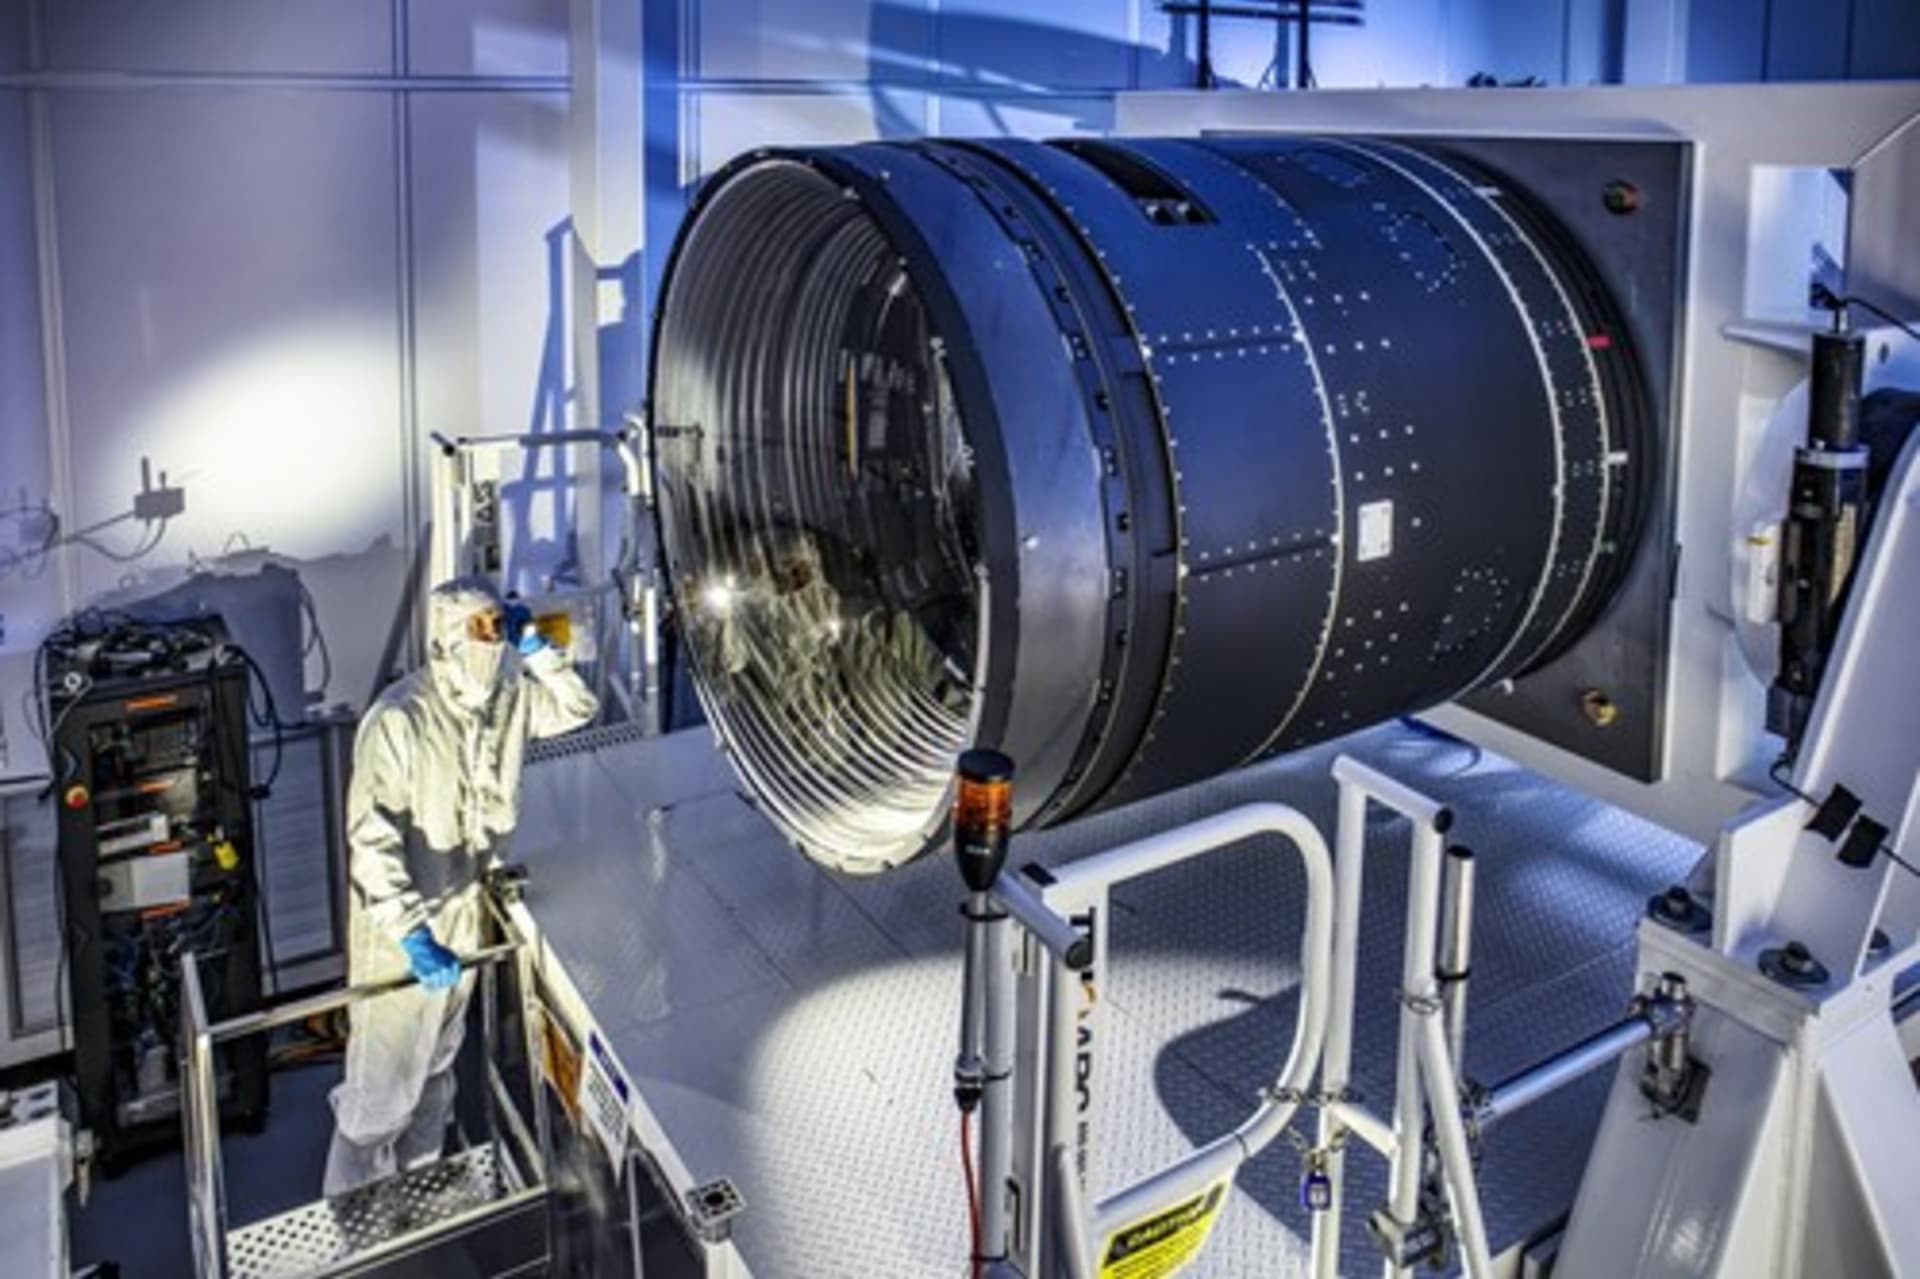 Projekt LSST, jehož výsledkem bylo vytvoření největšího fotaparátu pro astronomii, byl dokončen